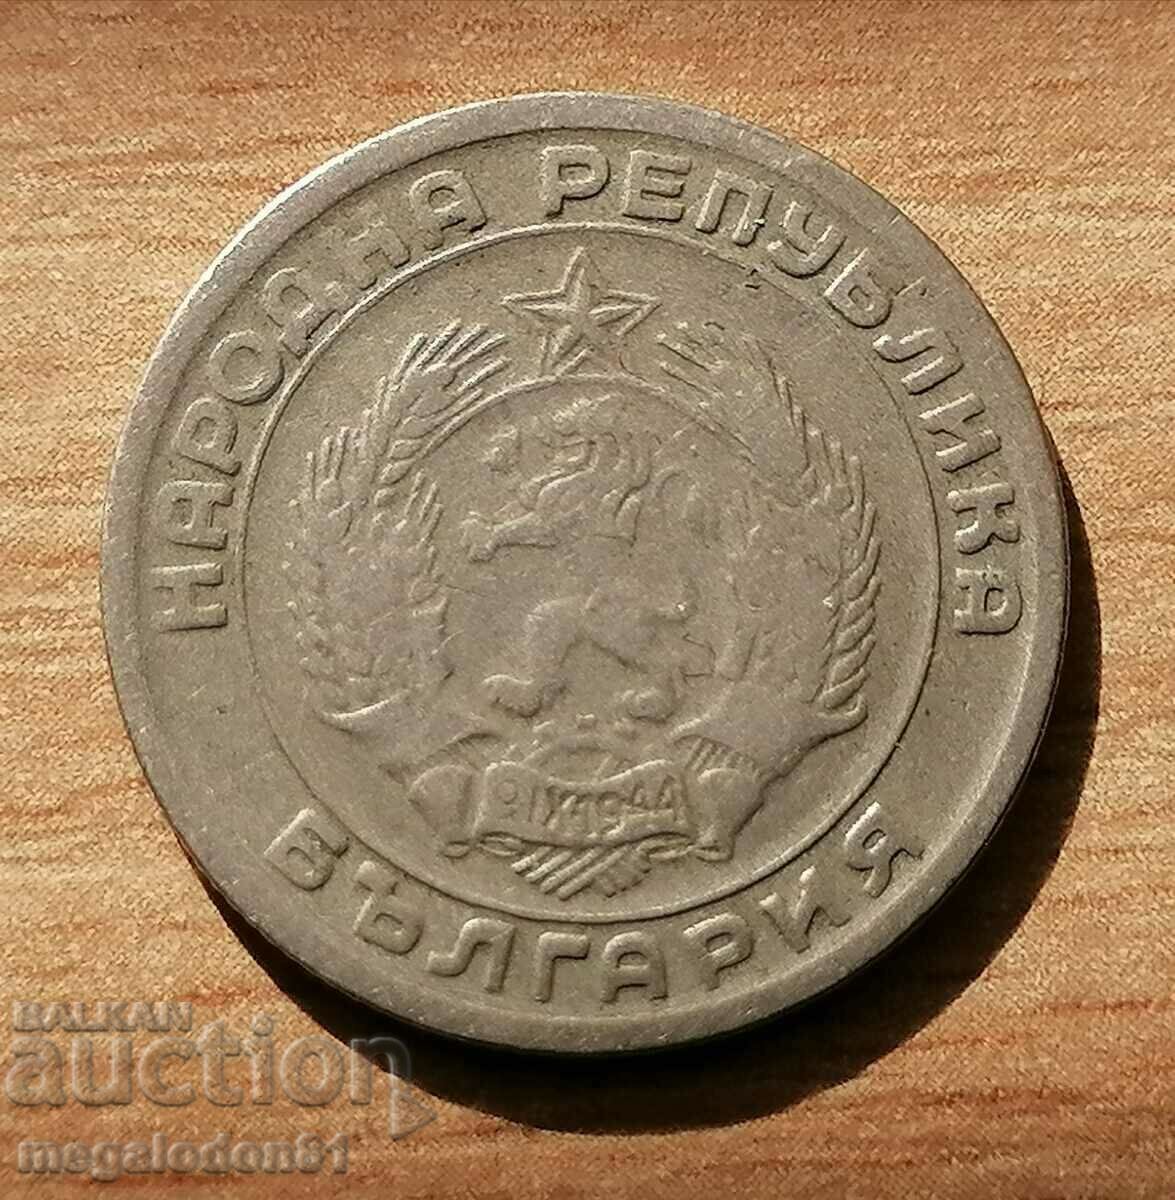 Bulgaria - 20 cents 1954, curiosity